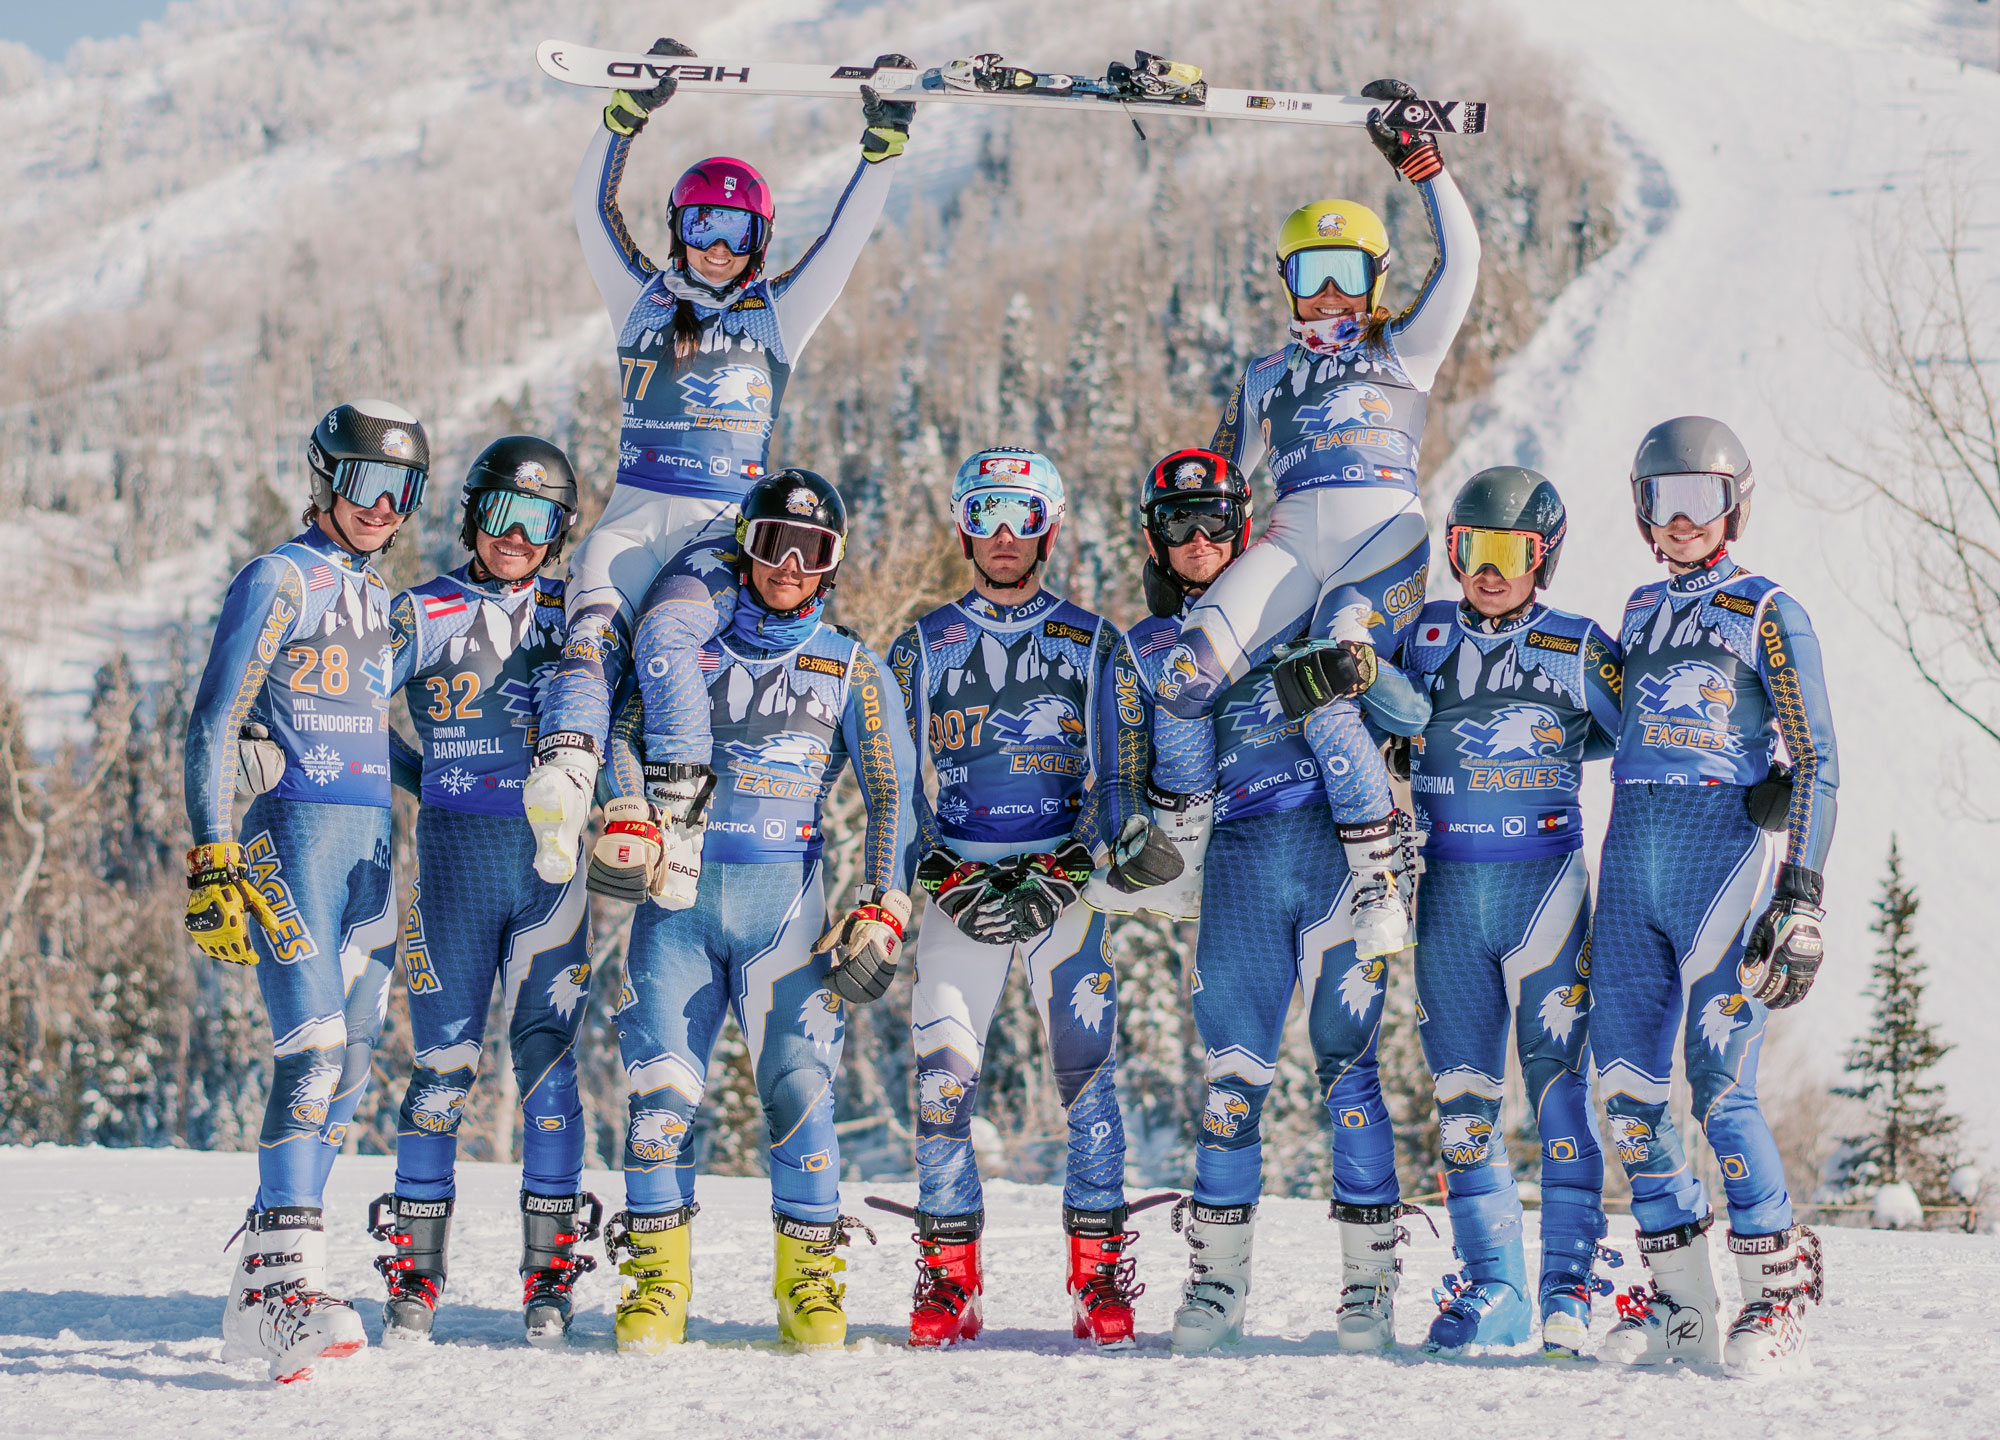 2 Team Summit athletes nominated for US Alpine ski team